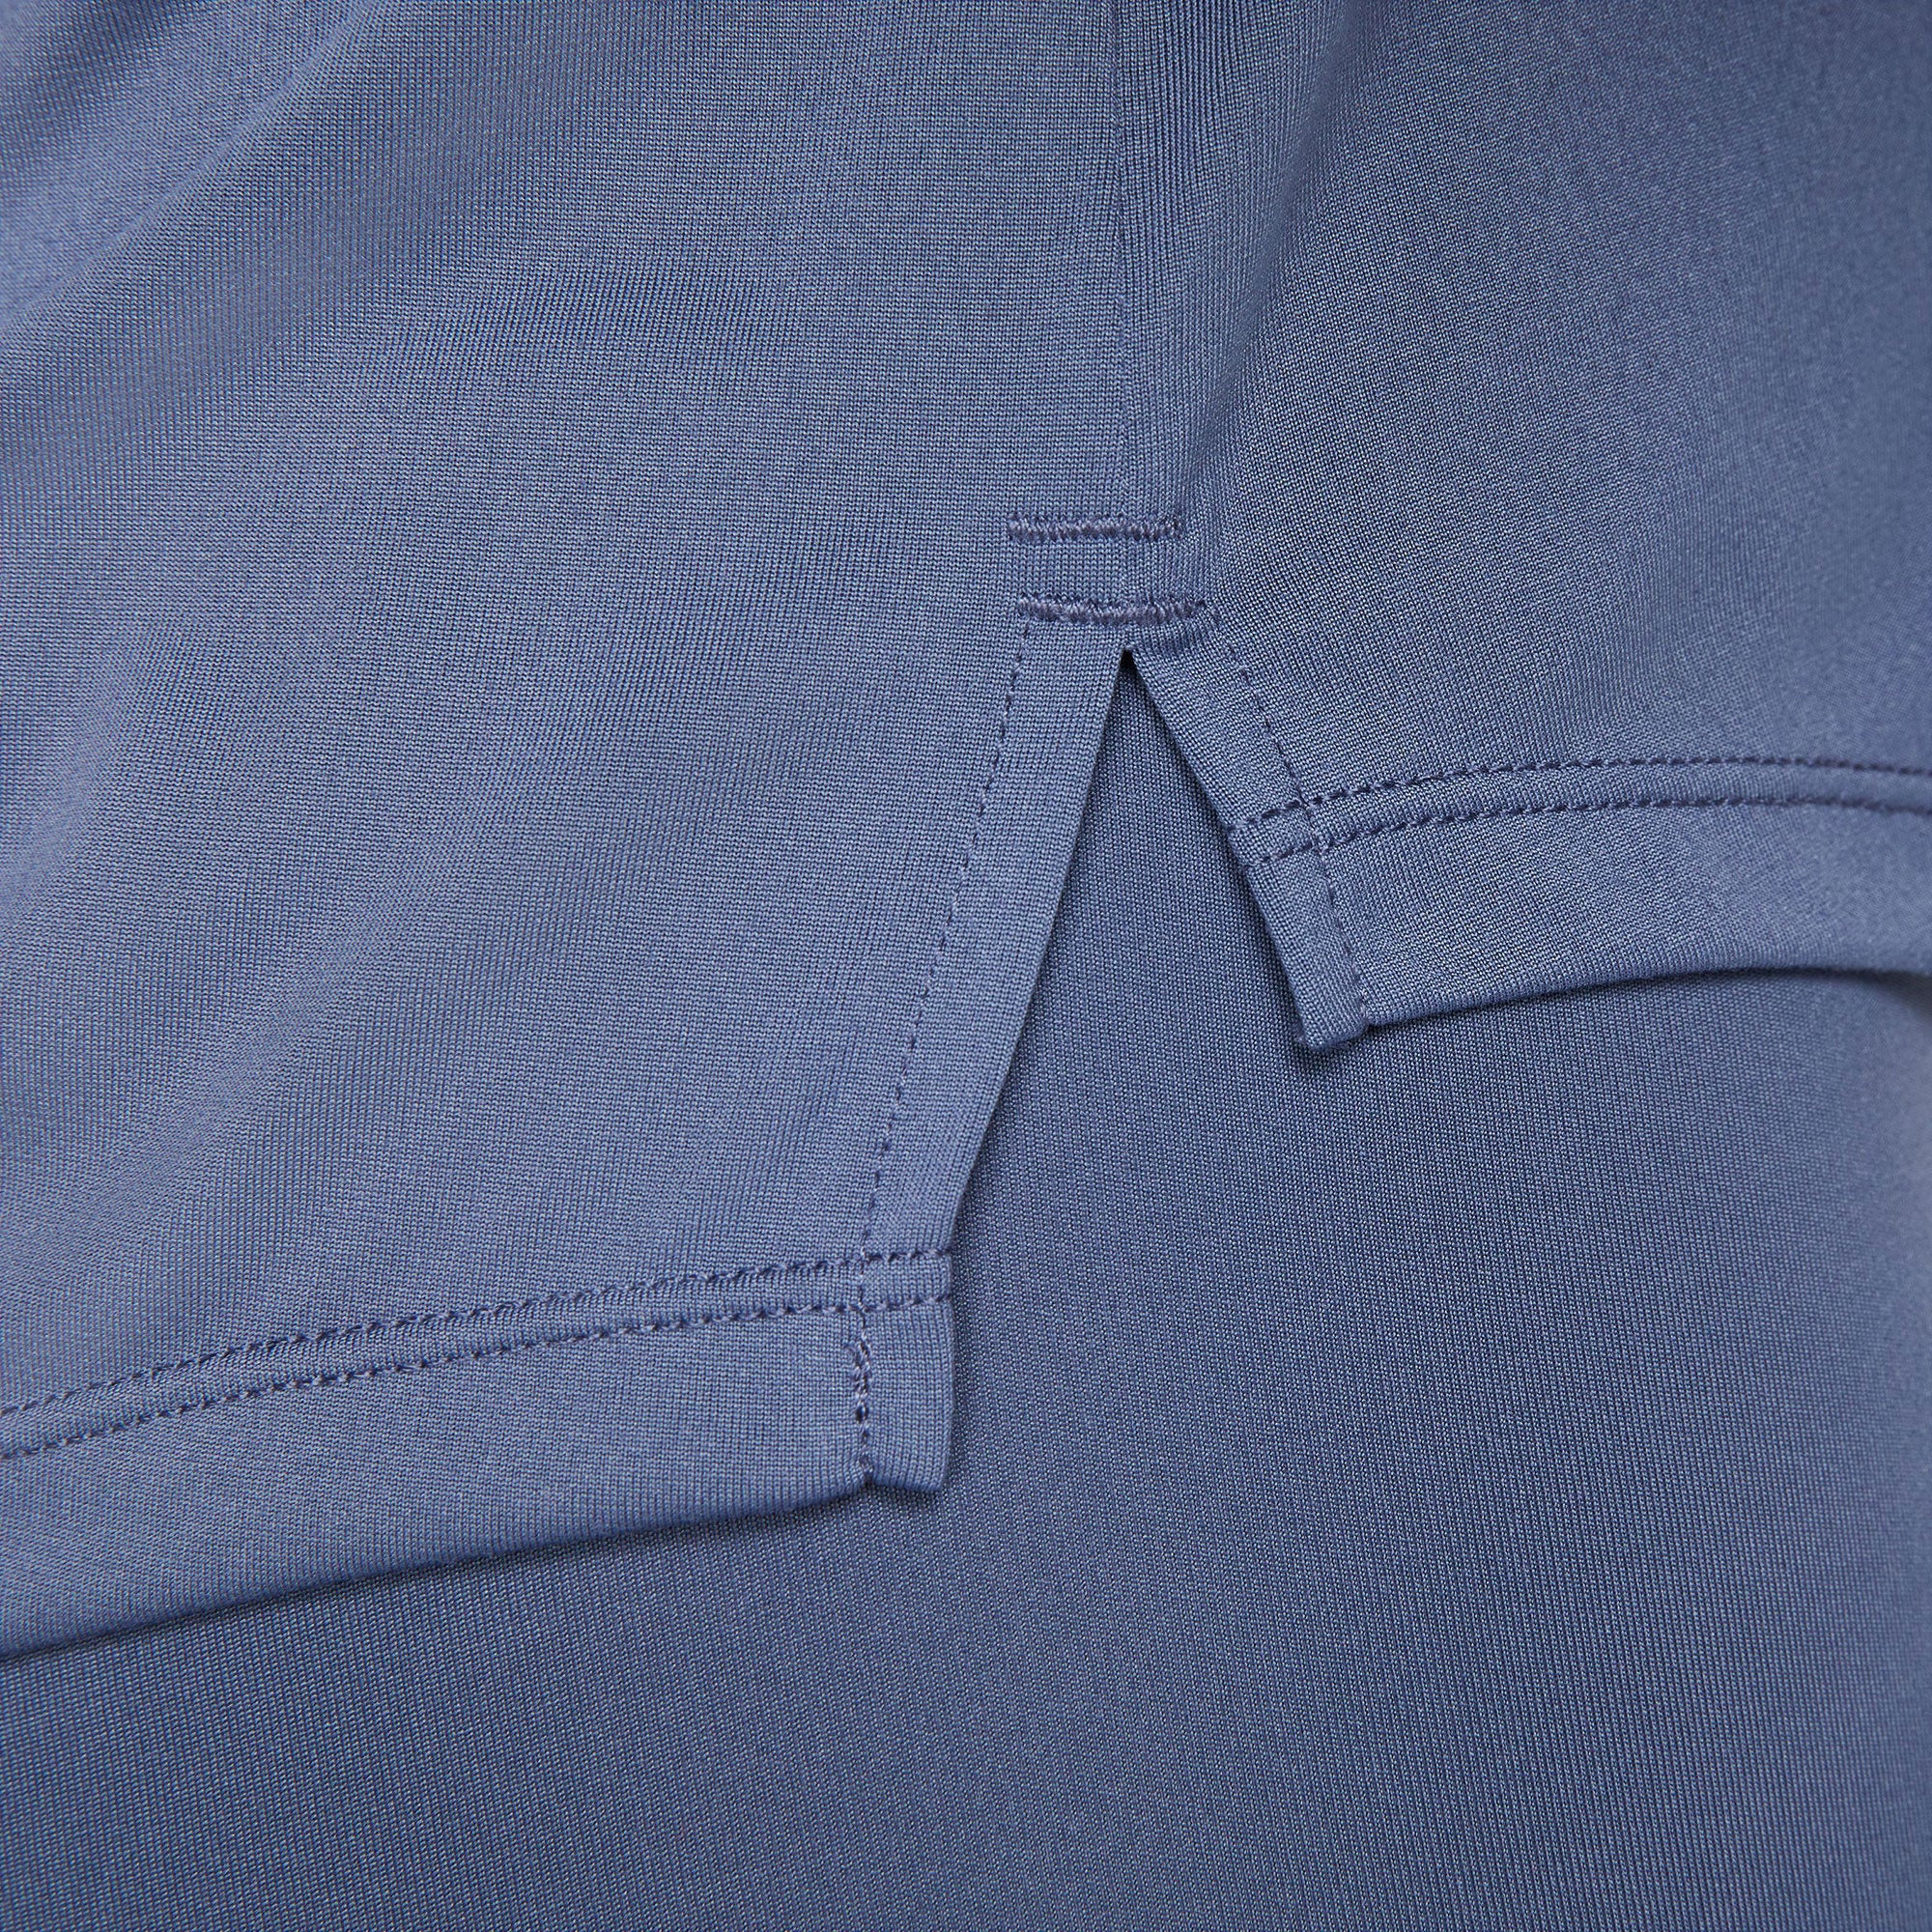 Nike One Dri-FIT Women's Standard Fit Shirt Blue (4)